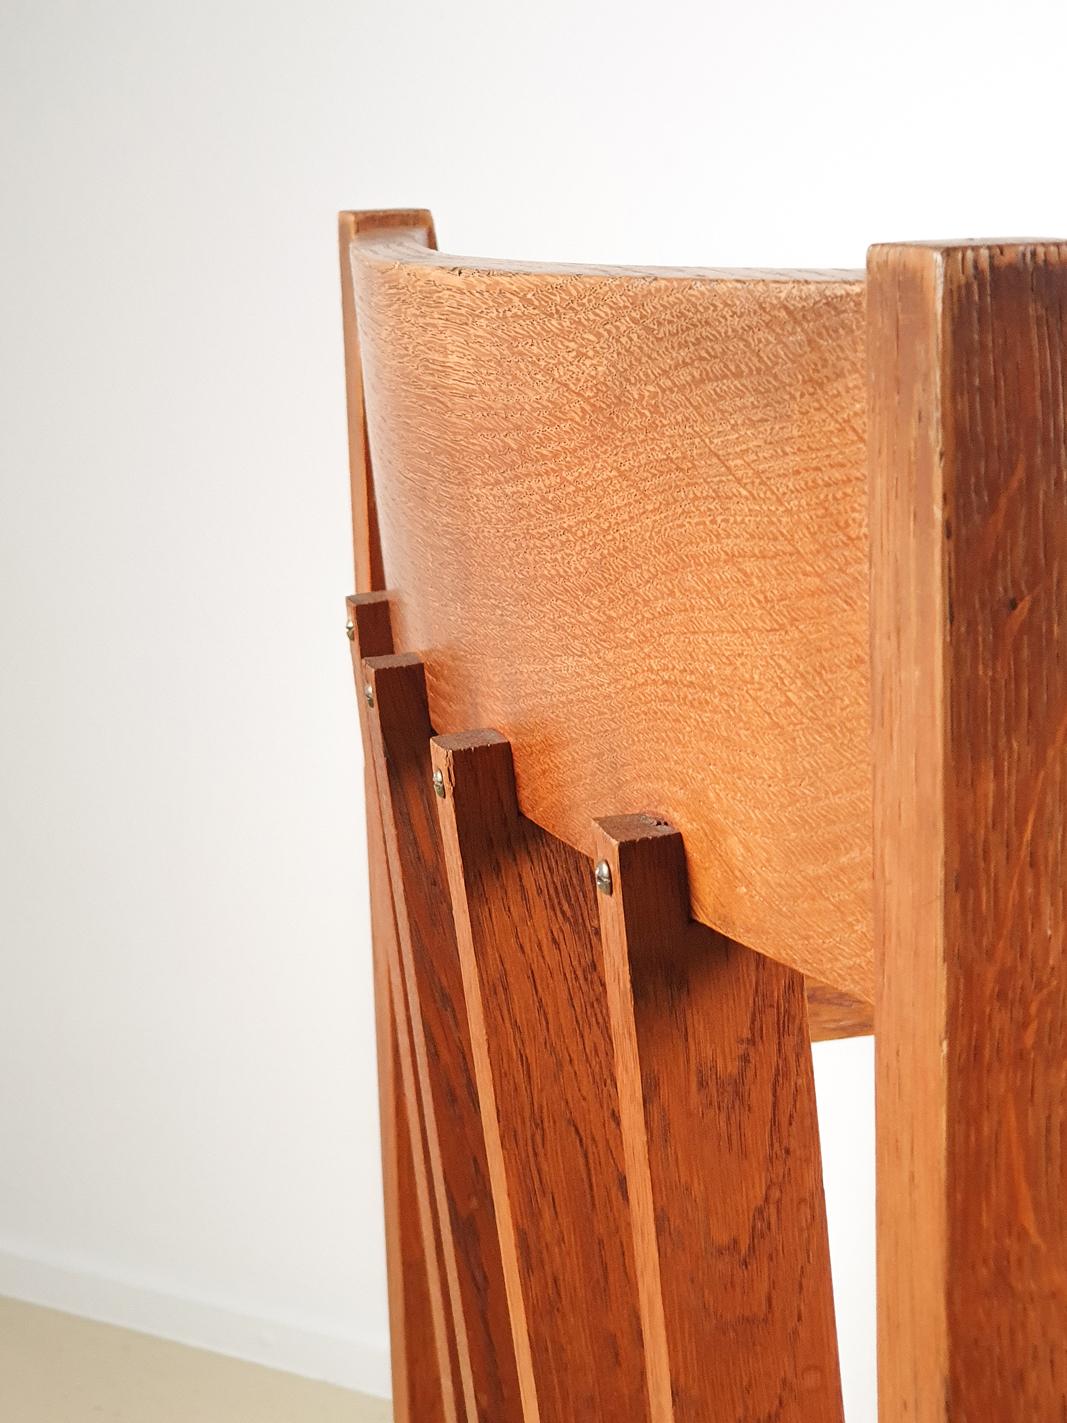 Minimalist Dutch Design the Hague School Wooden Chair